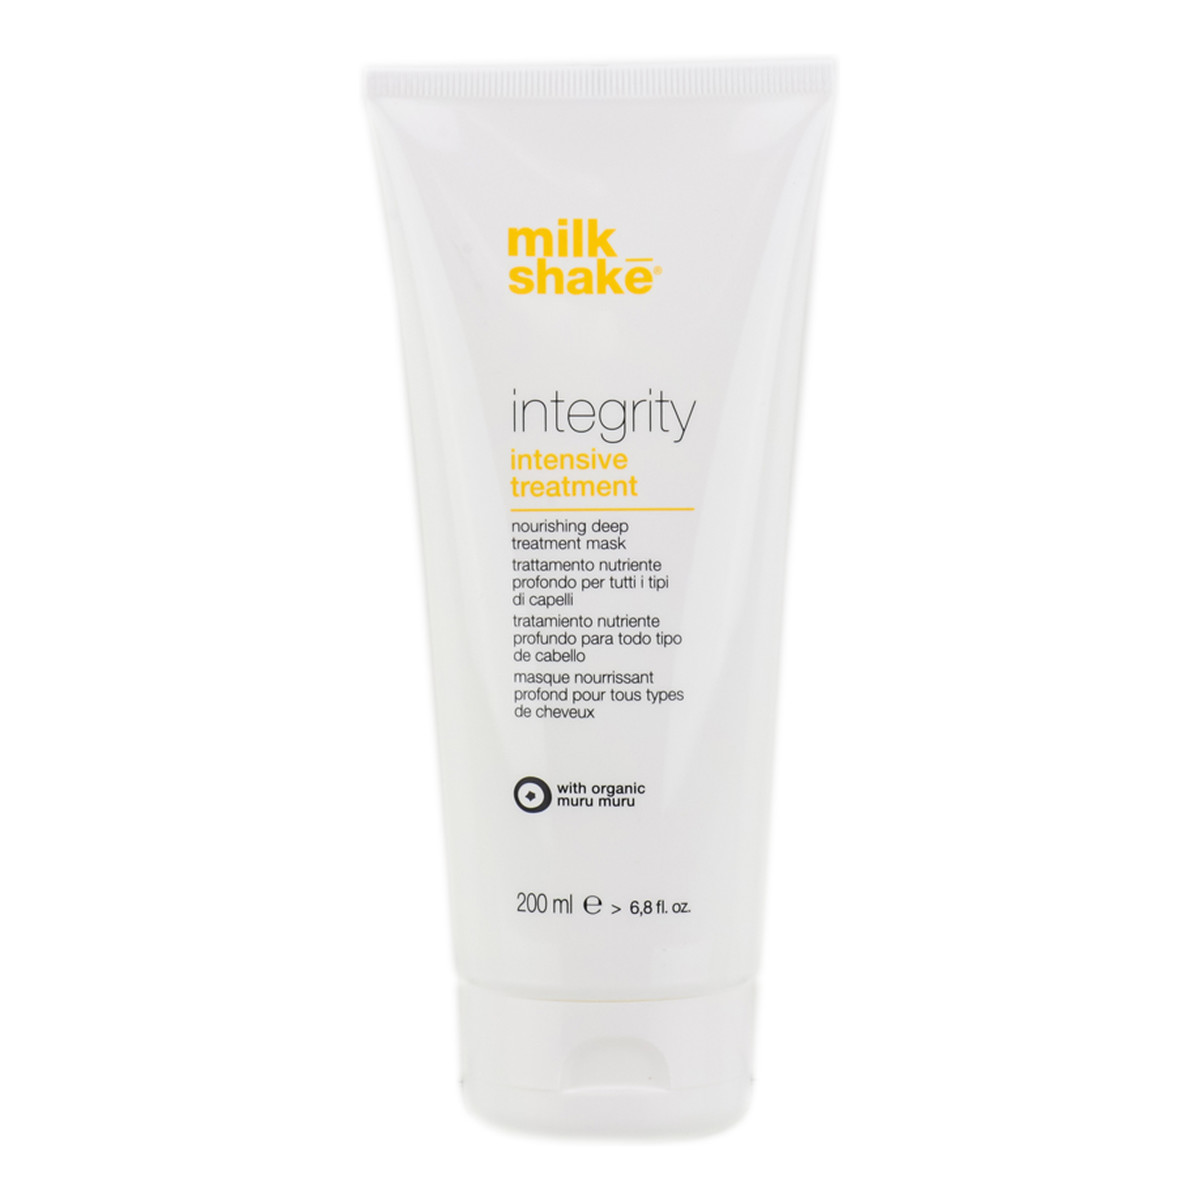 Milk Shake Integrity Intensive Treatment maska głęboko odżywiająca 200ml